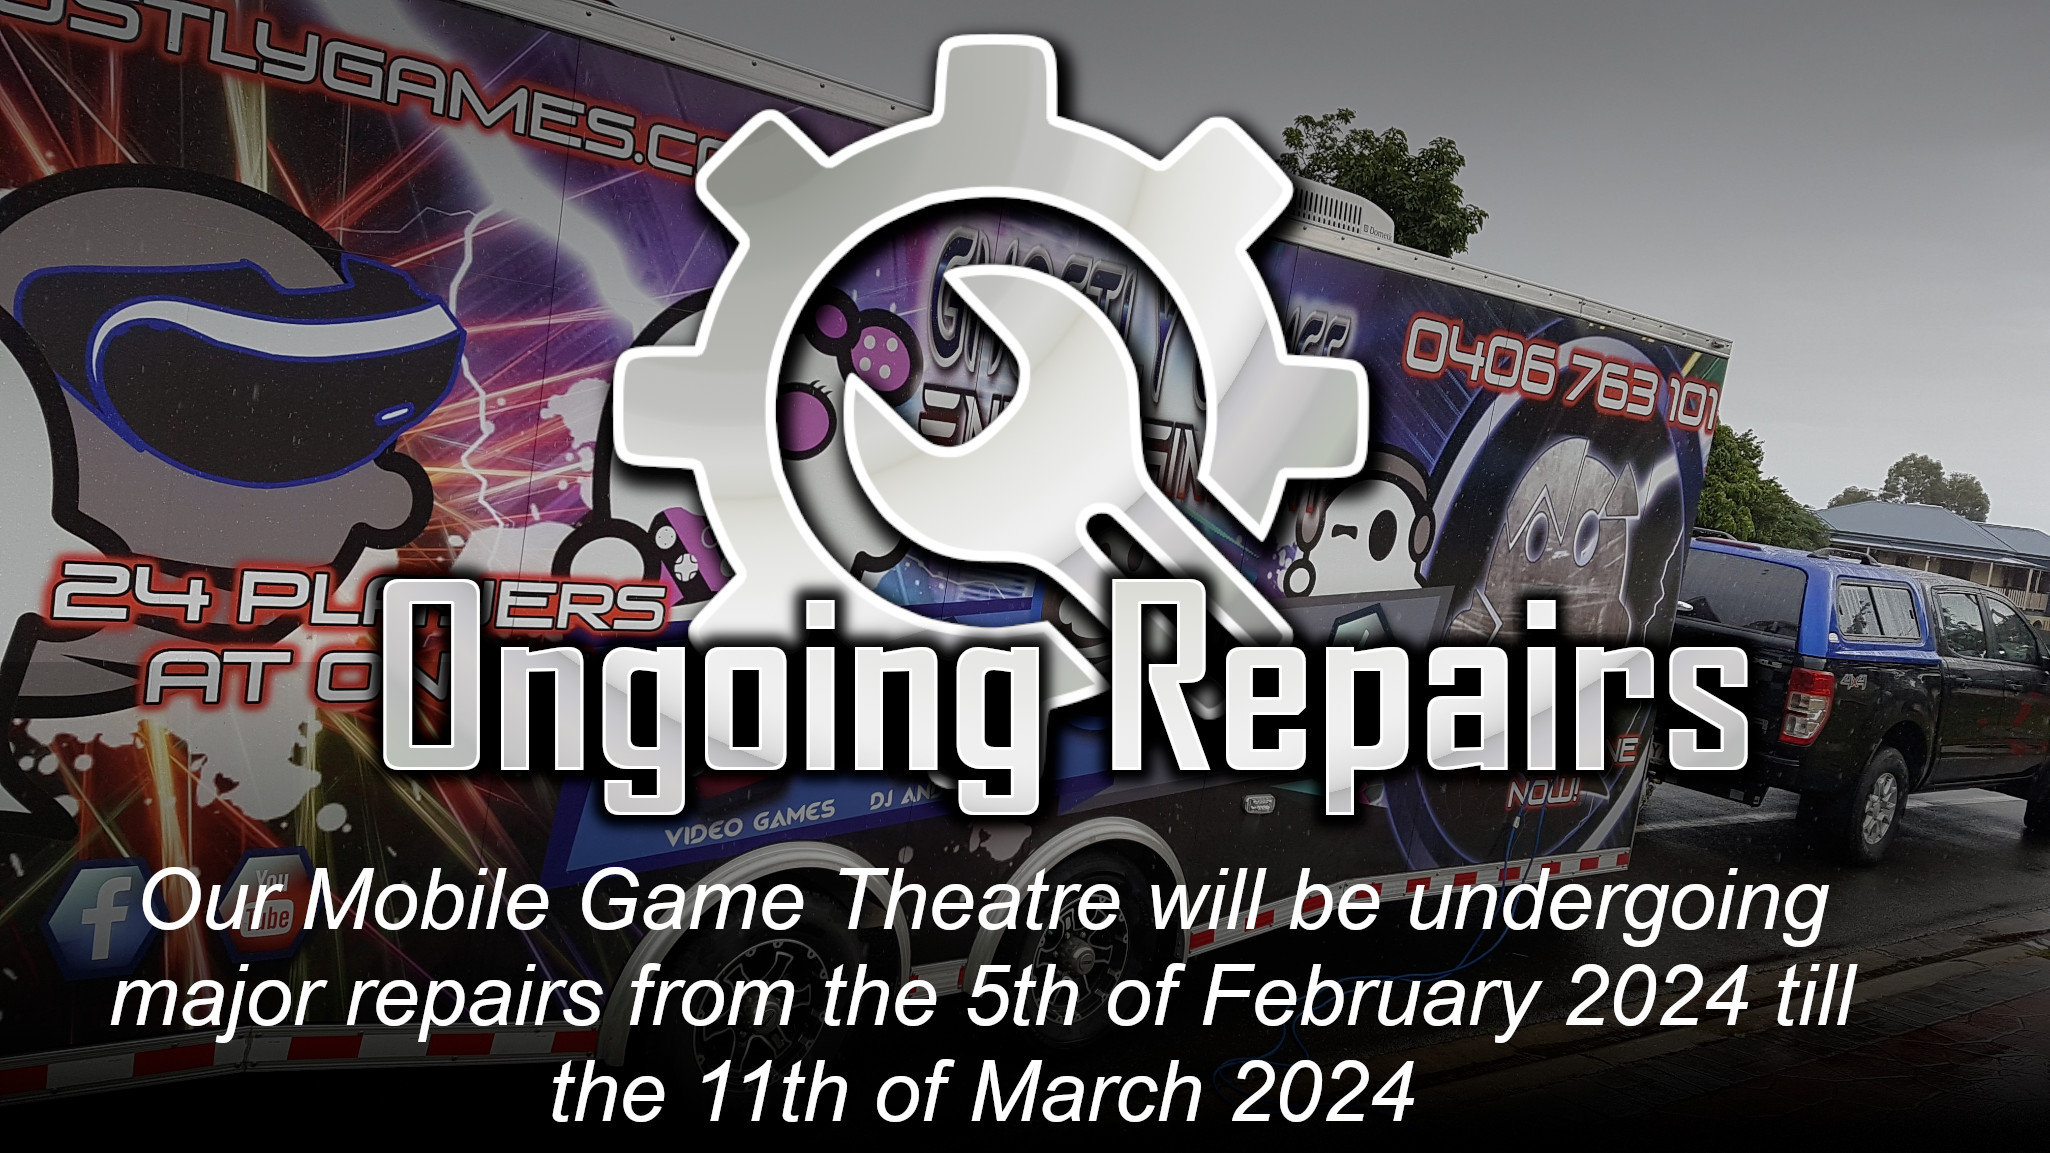 Mobile Game Theatre Under Repairs